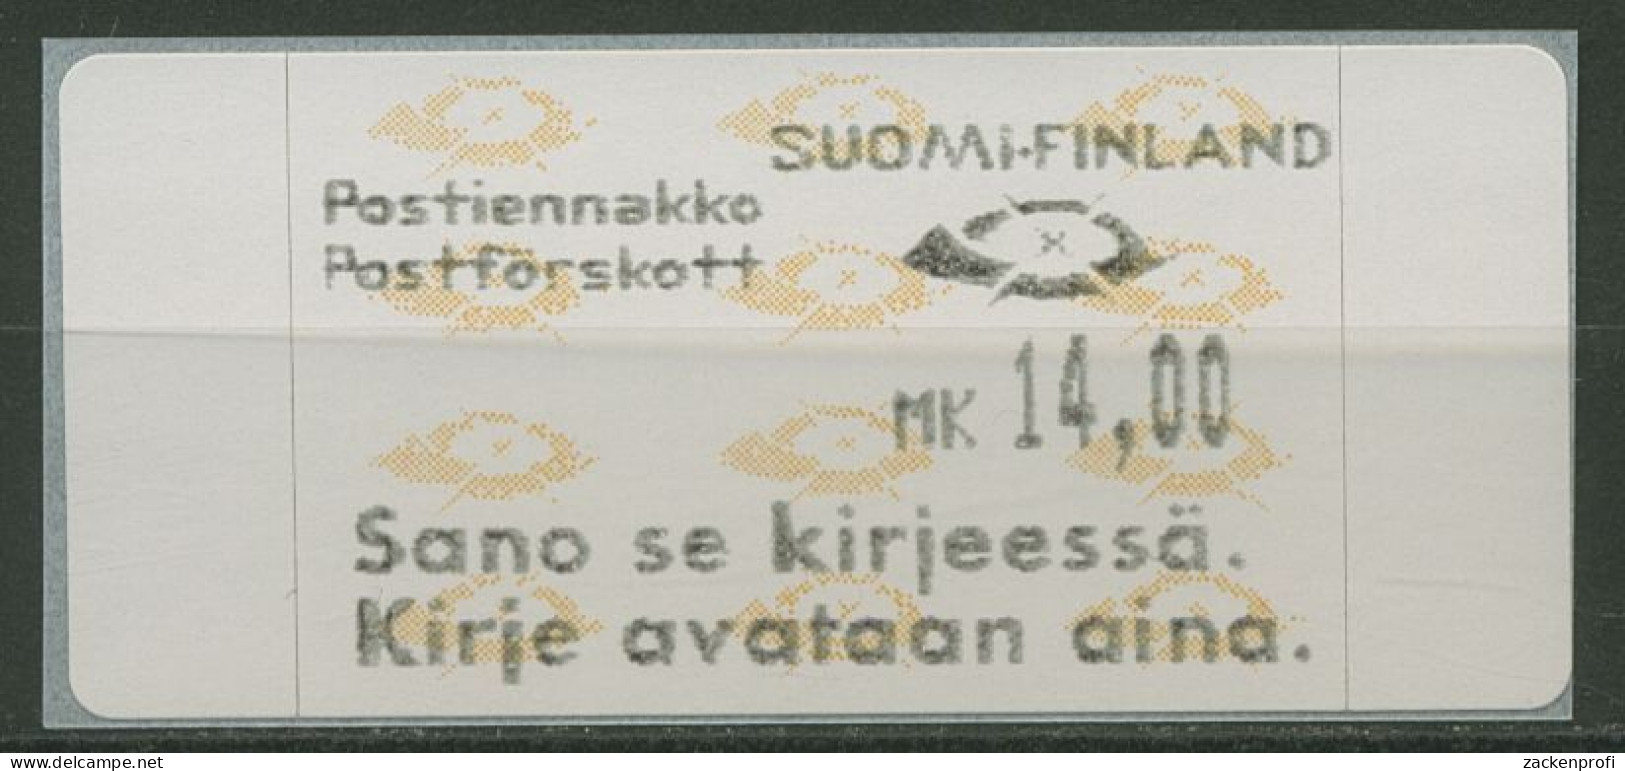 Finnland ATM 1993 Posthörner Einzelwert ATM 12.6 Z5 Postfrisch - Vignette [ATM]